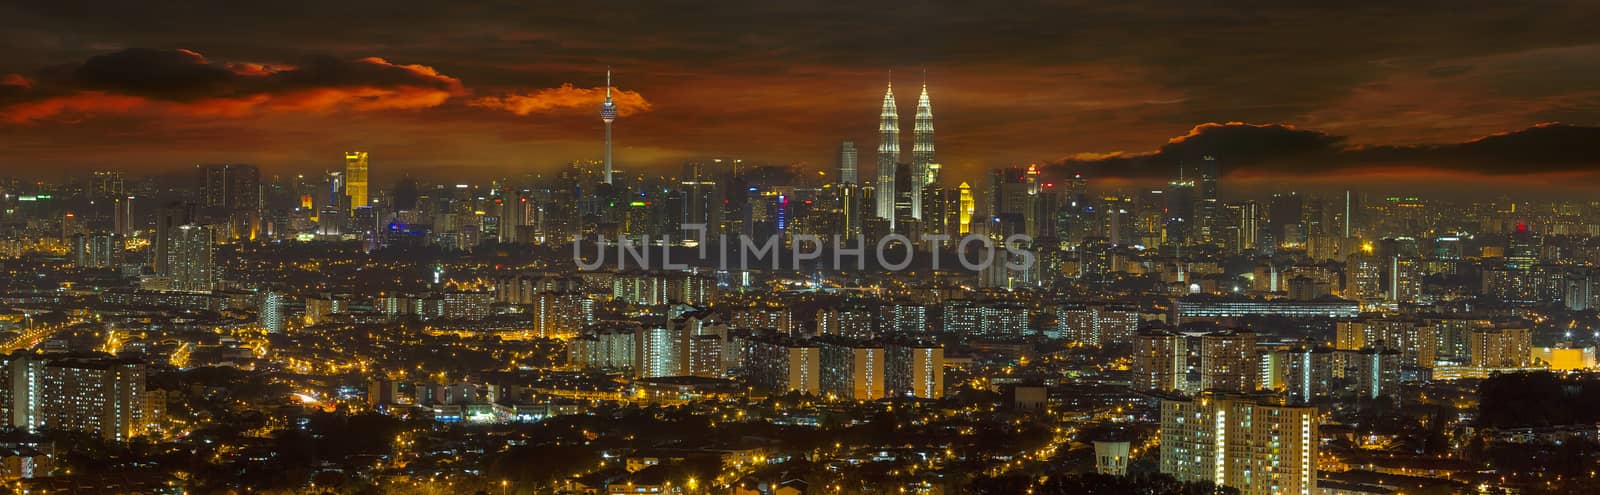 Kuala Lumpur Cityscape at Sunset Panorama by jpldesigns